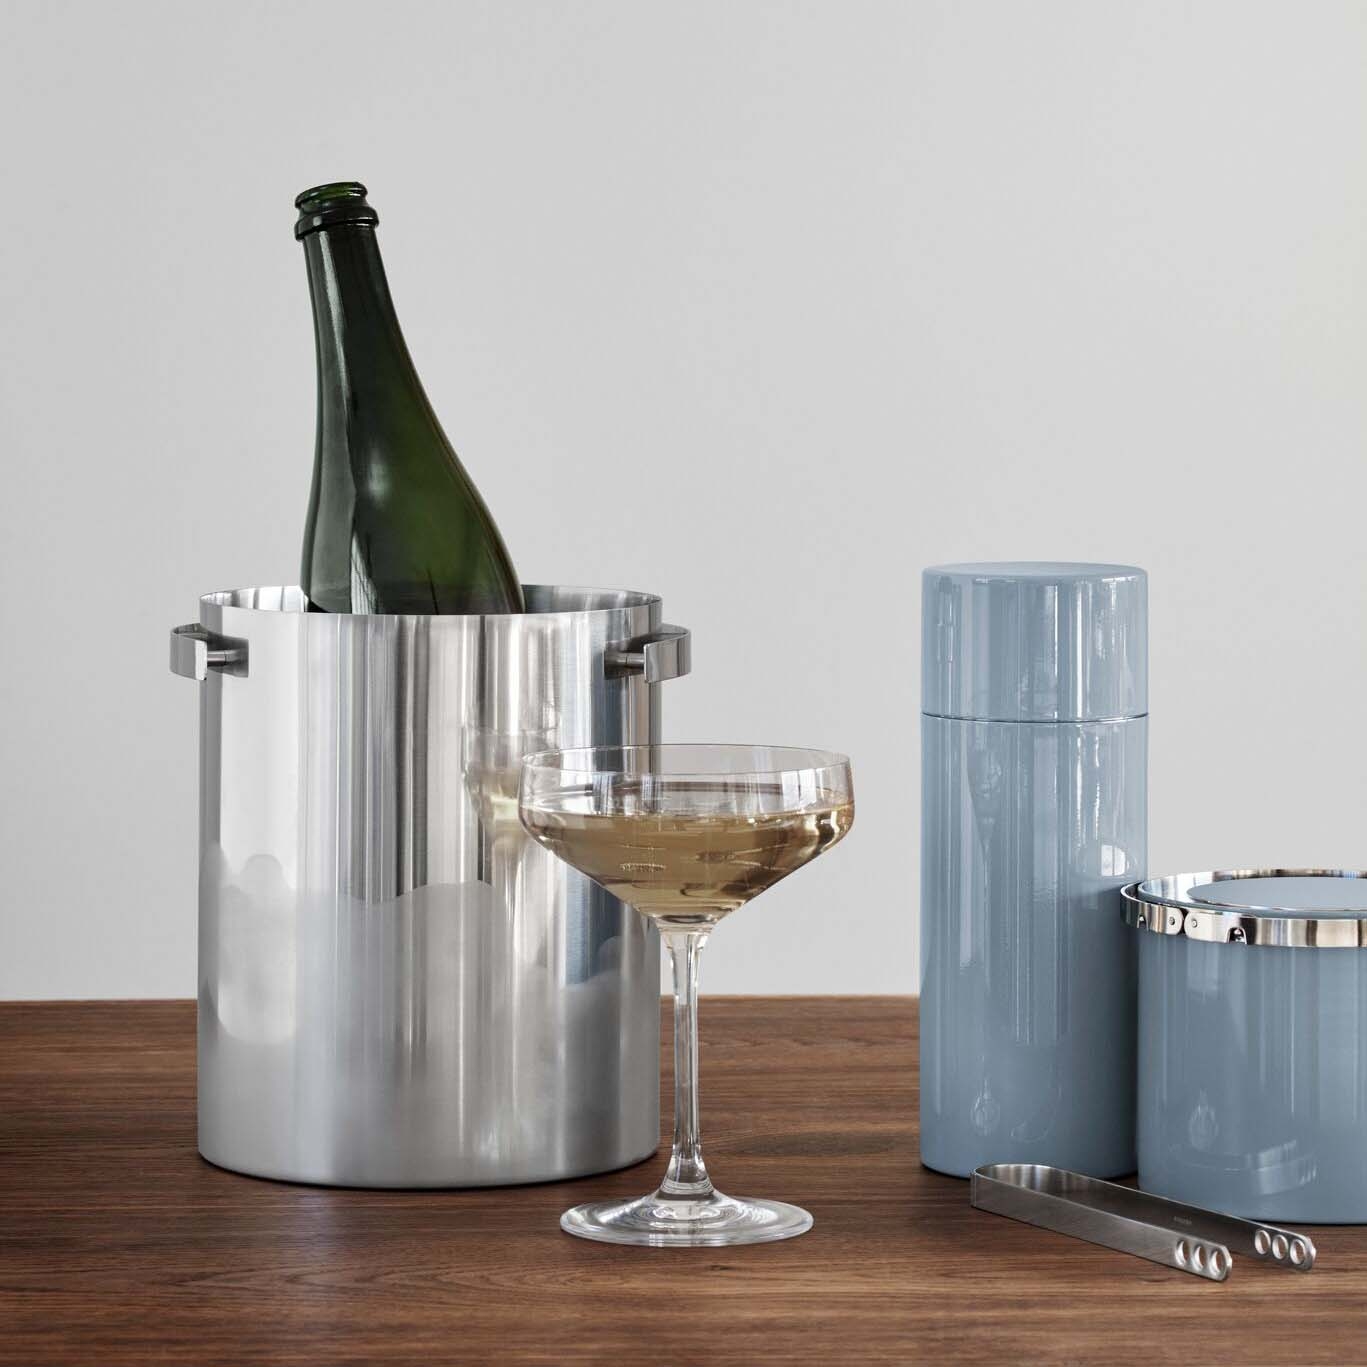 Arne Jacobsen champagnekøler